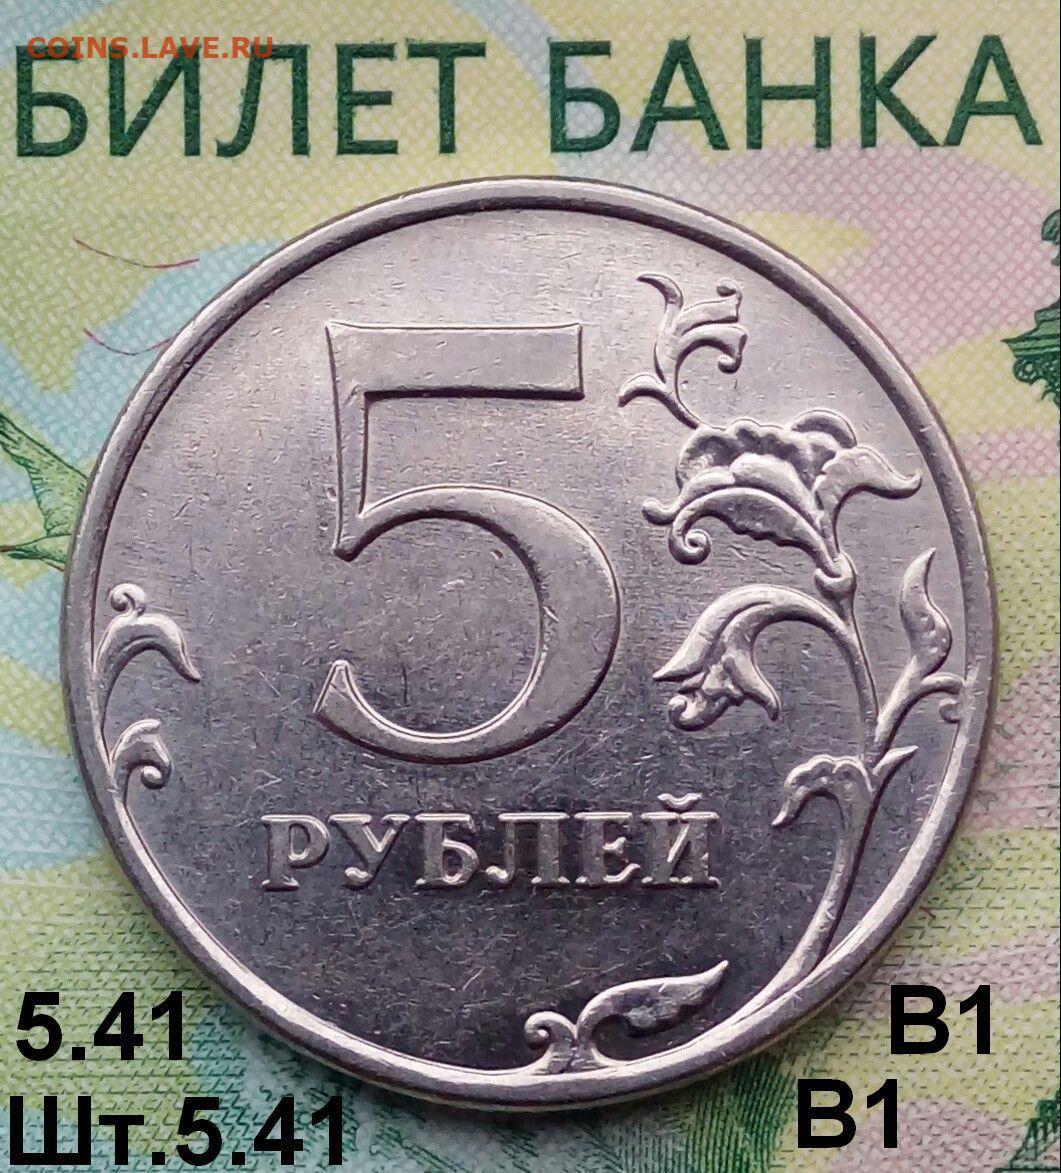 35 53 в рубли. 5 Рублей 2014 г. 5 Рублей 2019г шт а2. 5 Руб 2008 ММД шт 1.12. 2 Шт по 5 рублей.